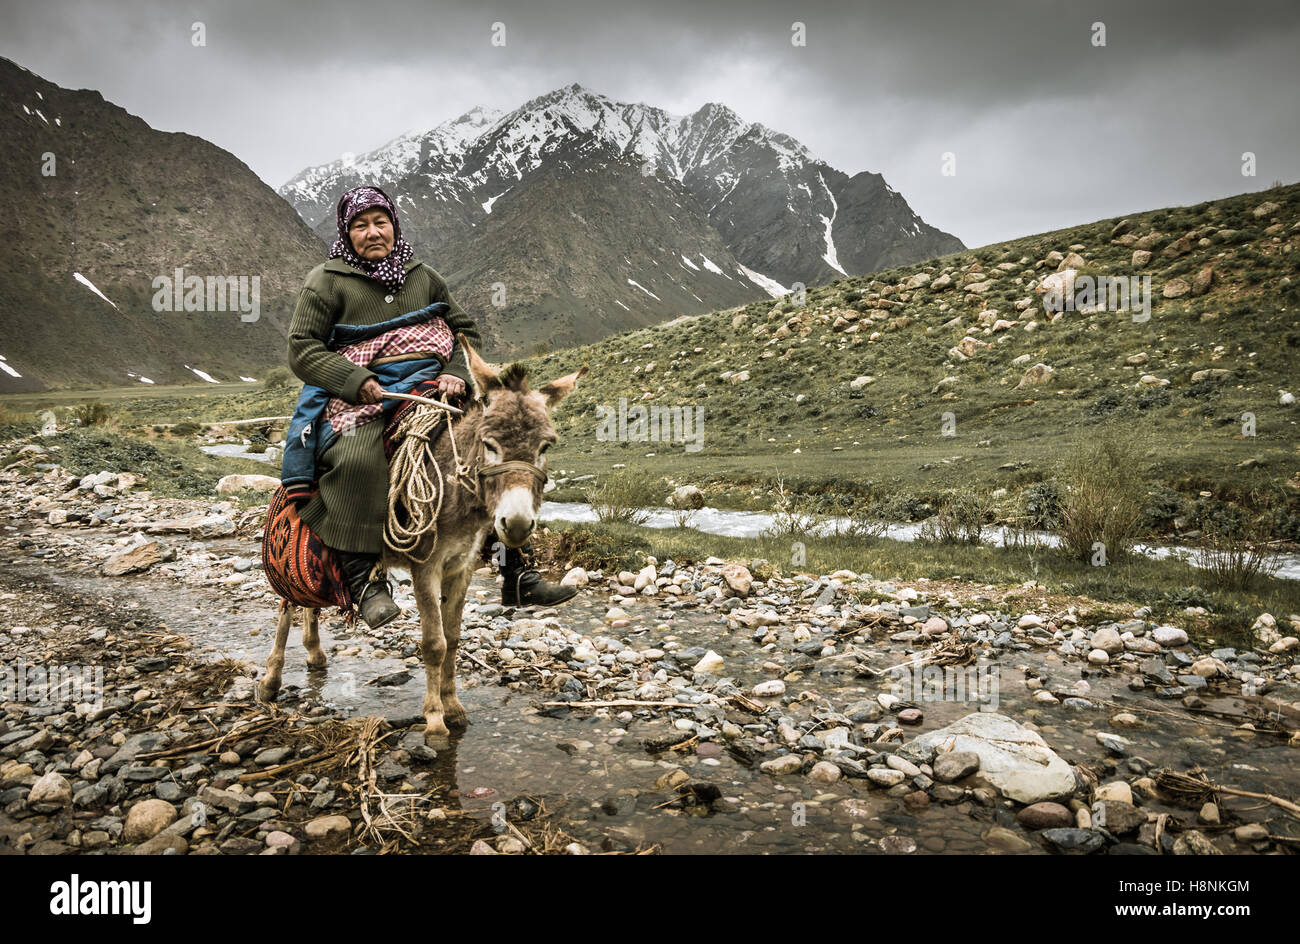 Kyrgyz lady on a donkey. Stock Photo